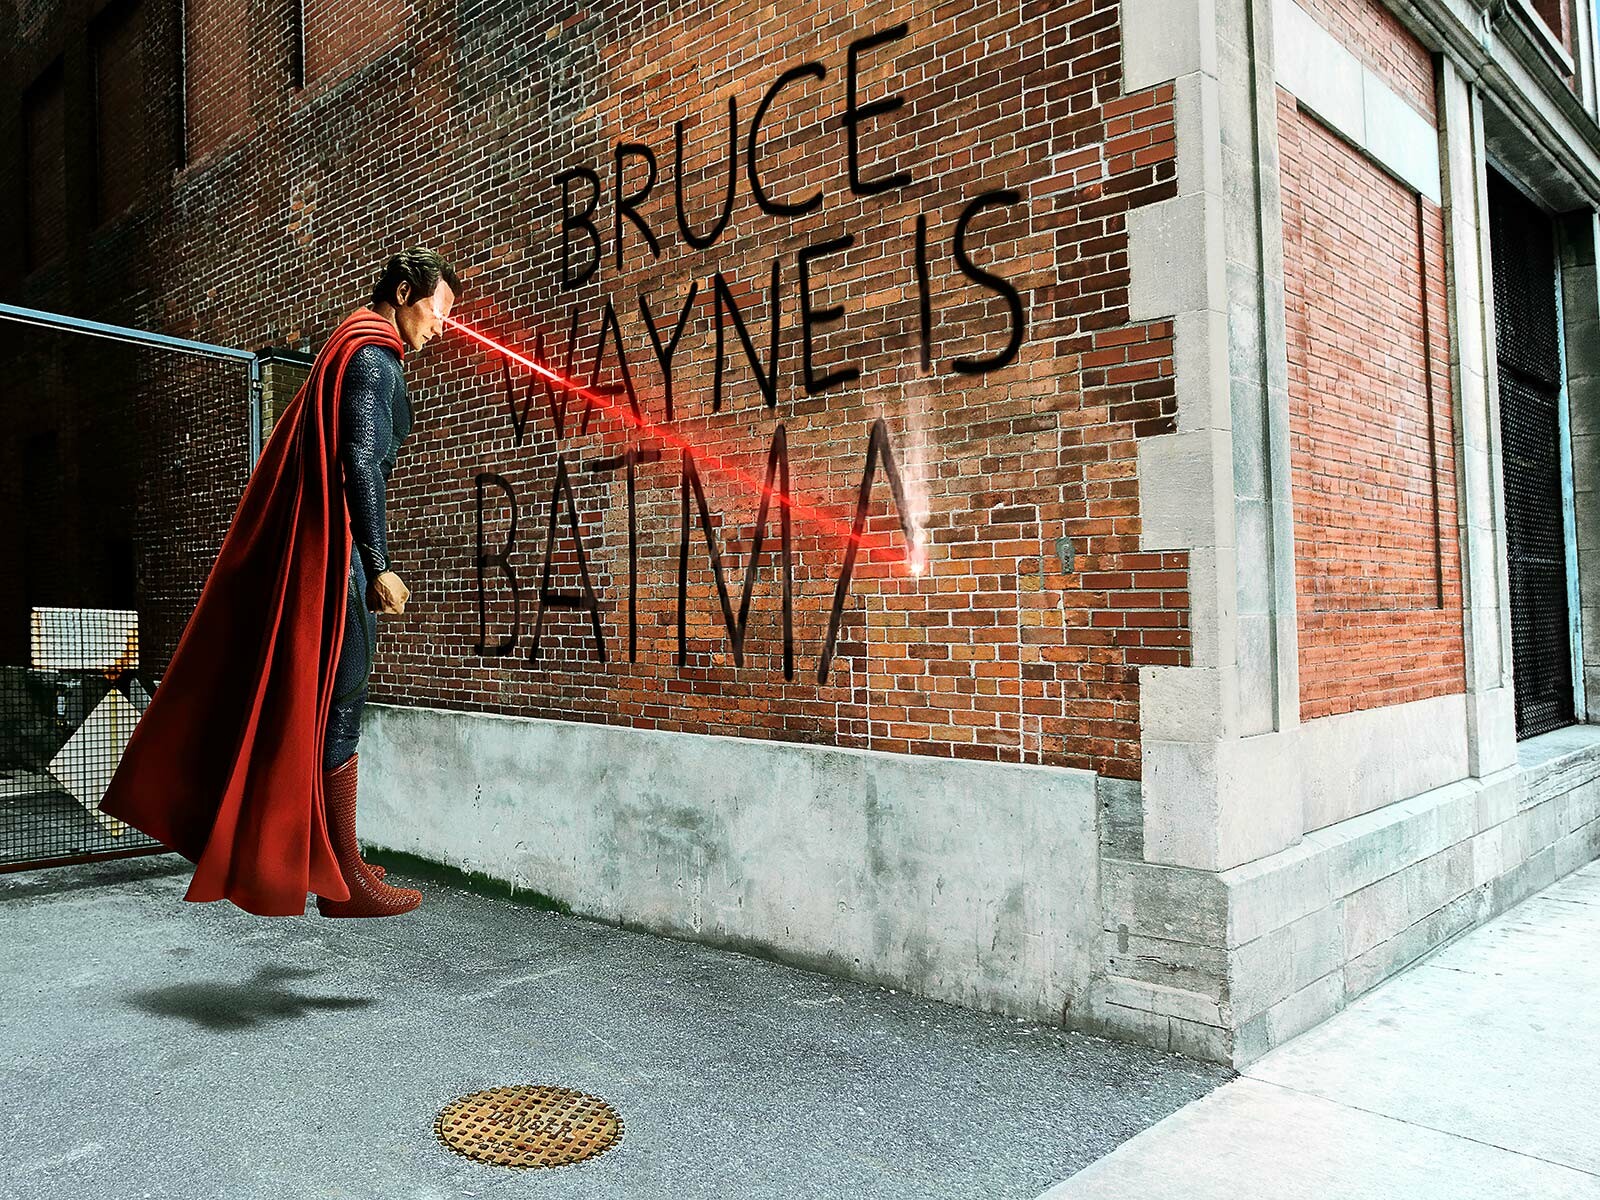 Bruce Wayne Graffiti - Daniel Picard